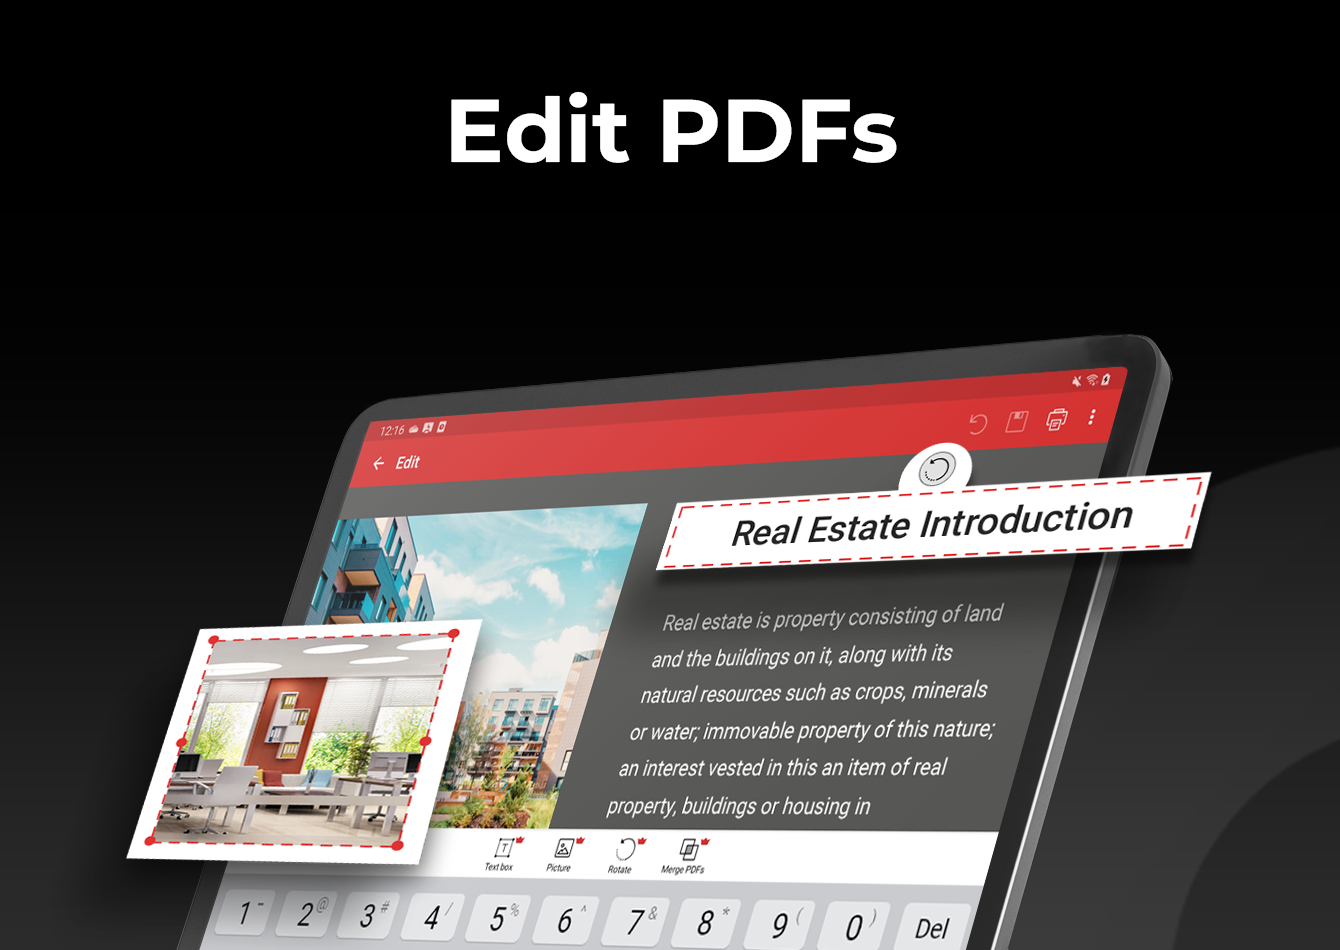 PDF Extra MOD APK